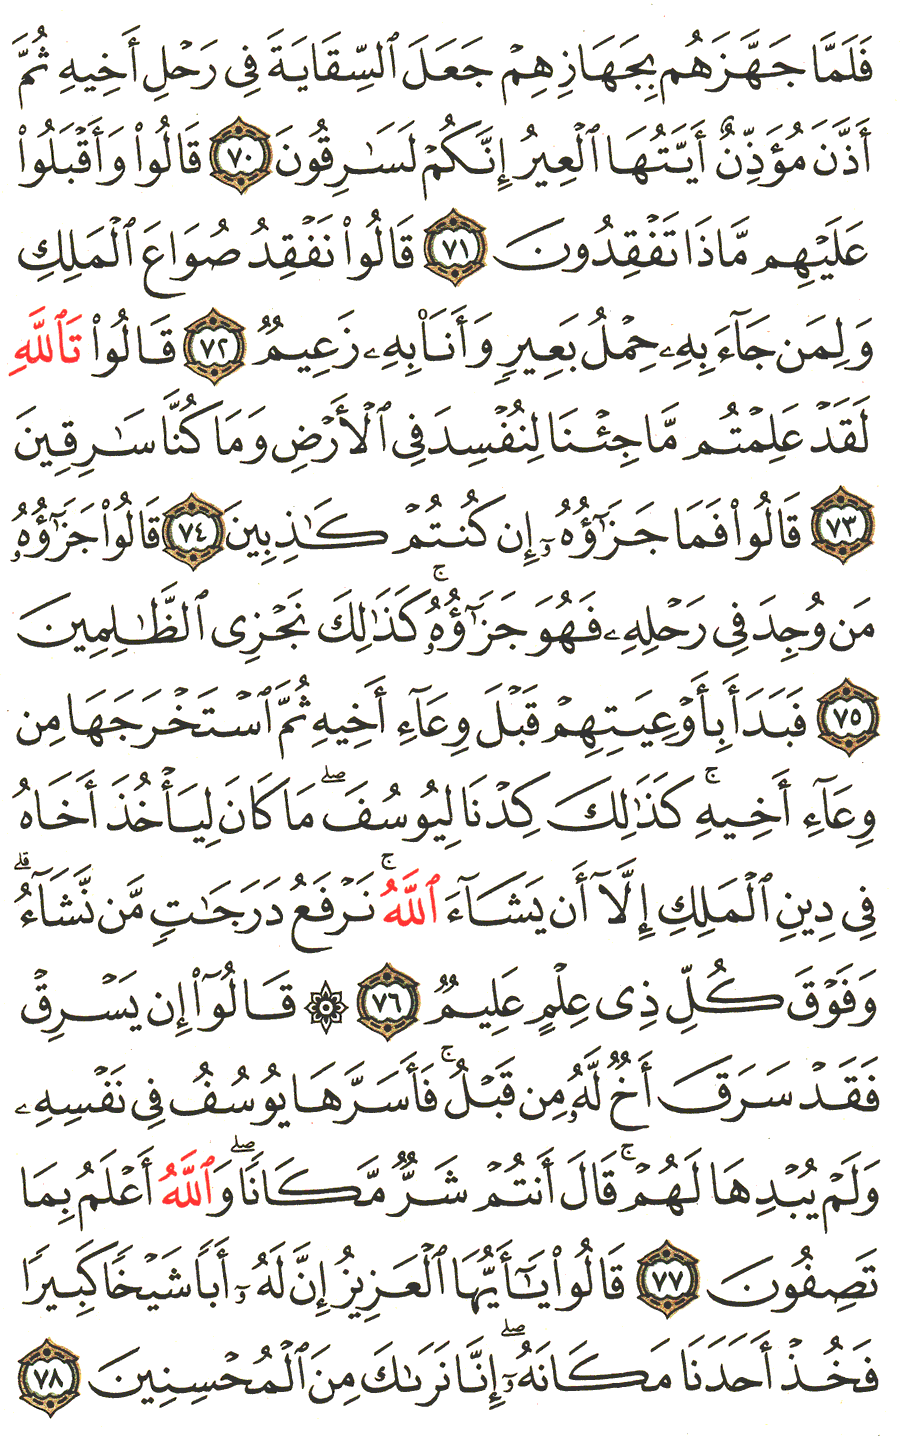 الصفحة رقم 244  من القرآن الكريم مكتوبة من المصحف